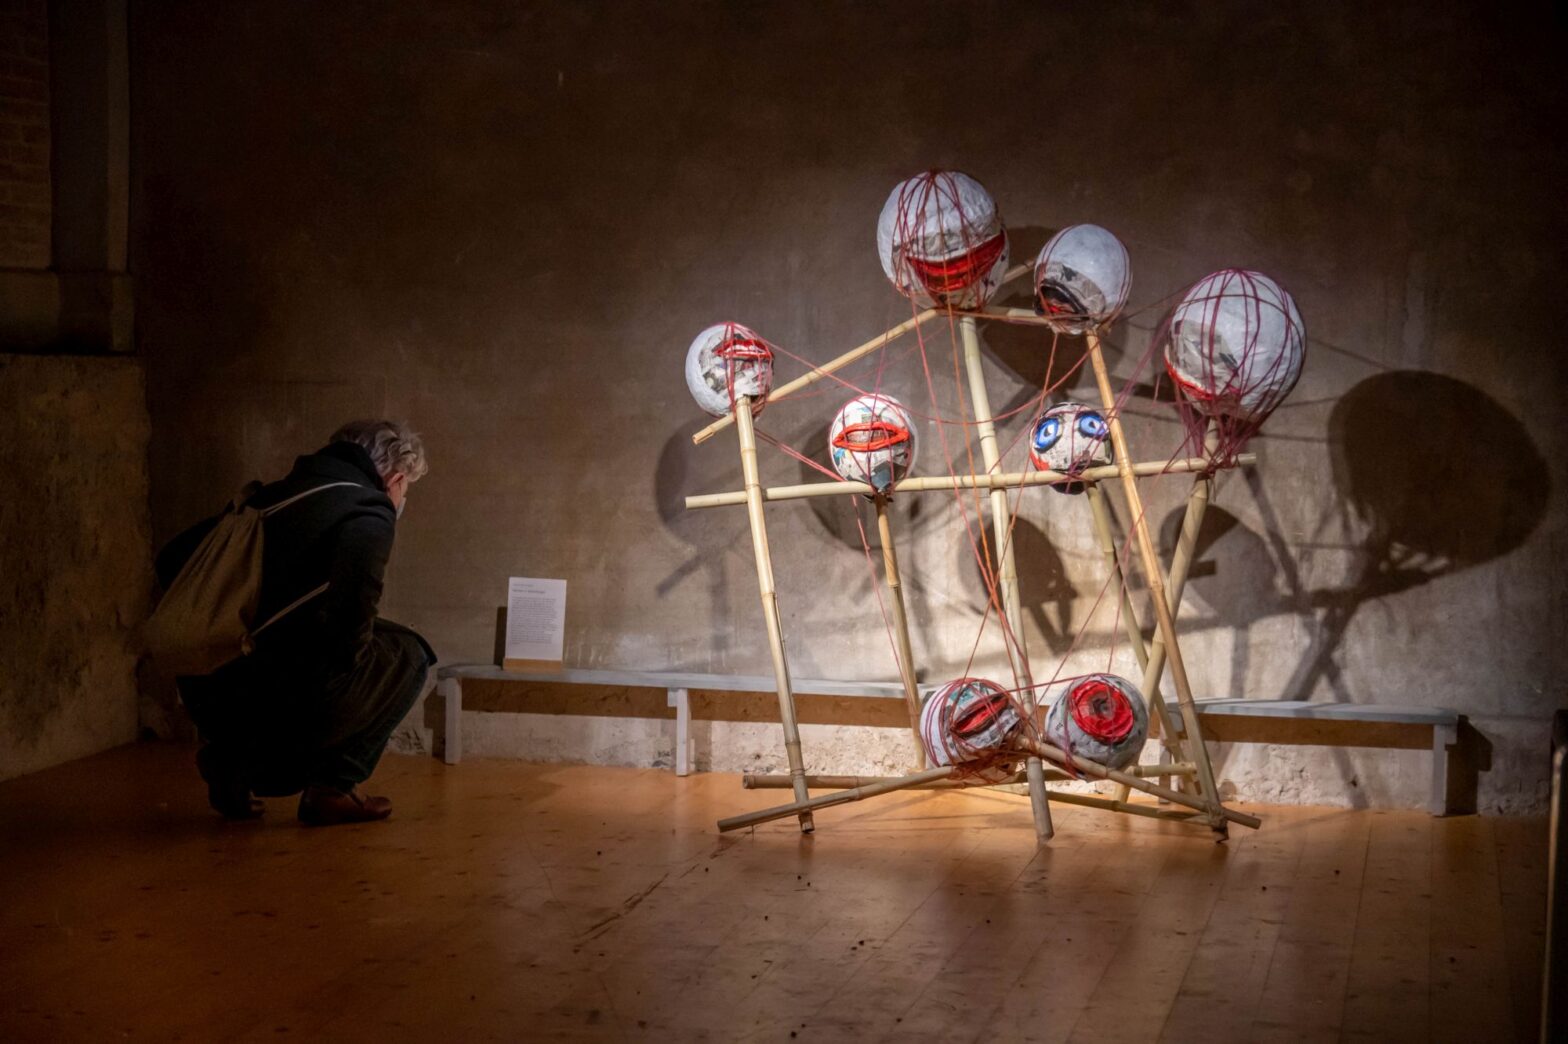 Installation von Bambuszweige an denen runde Ballone mit Augen und Münder. Neben dran eine Person liesst einen Text.